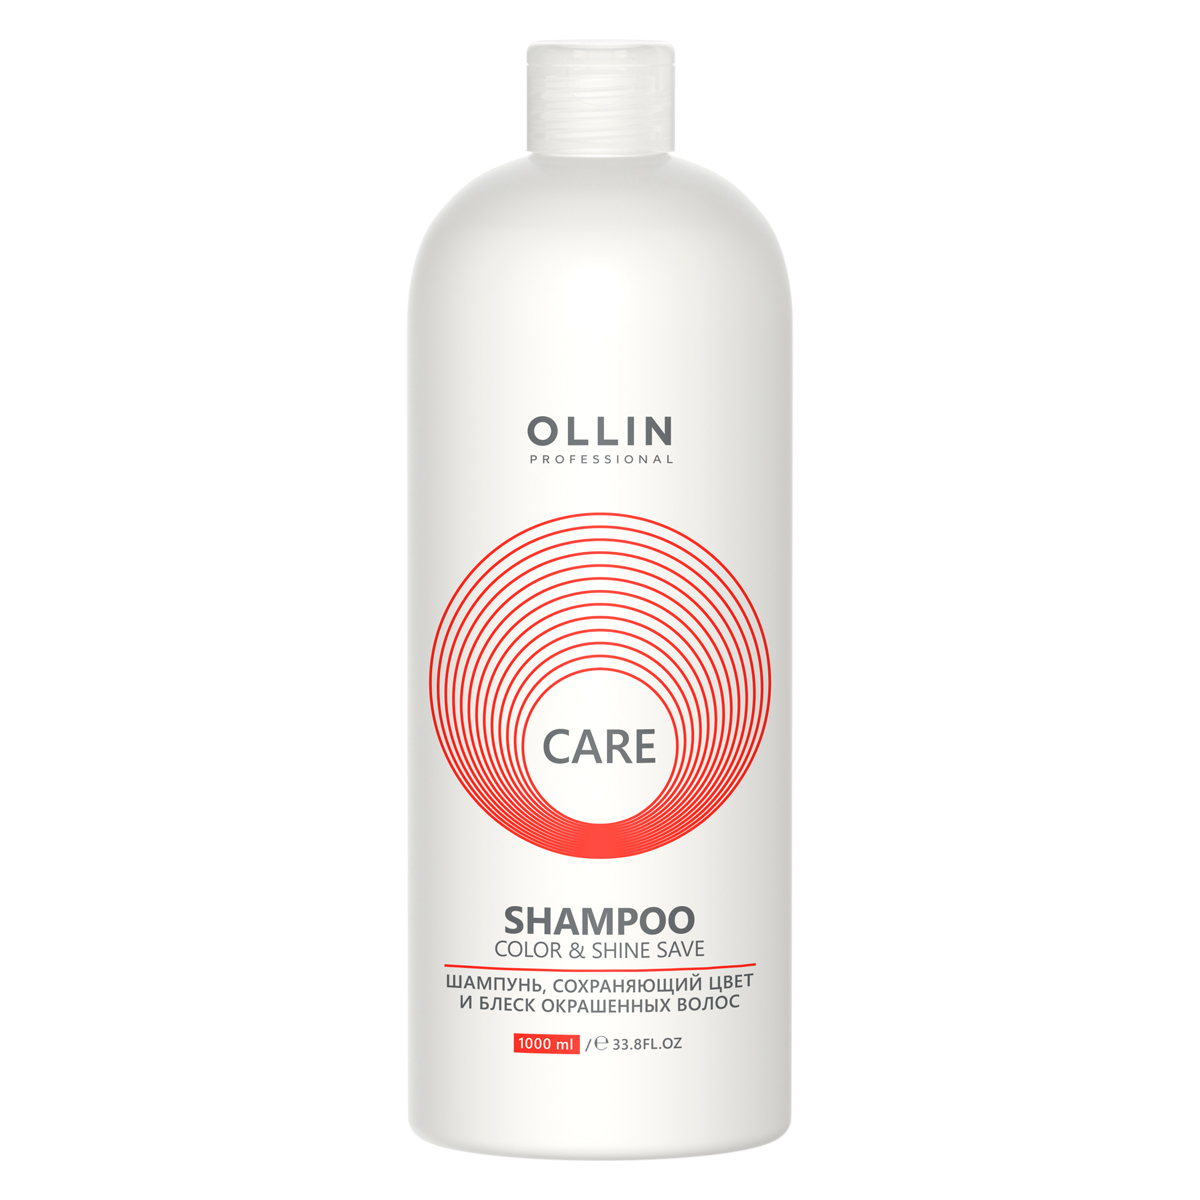 Ollin Professional Шампунь, сохраняющий цвет и блеск окрашенных волос, 1000 мл (Ollin Professional, Care) ollin care набор шампунь 1000 мл и маска 500 мл сохраняющий цвет и блеск окрашенных волос